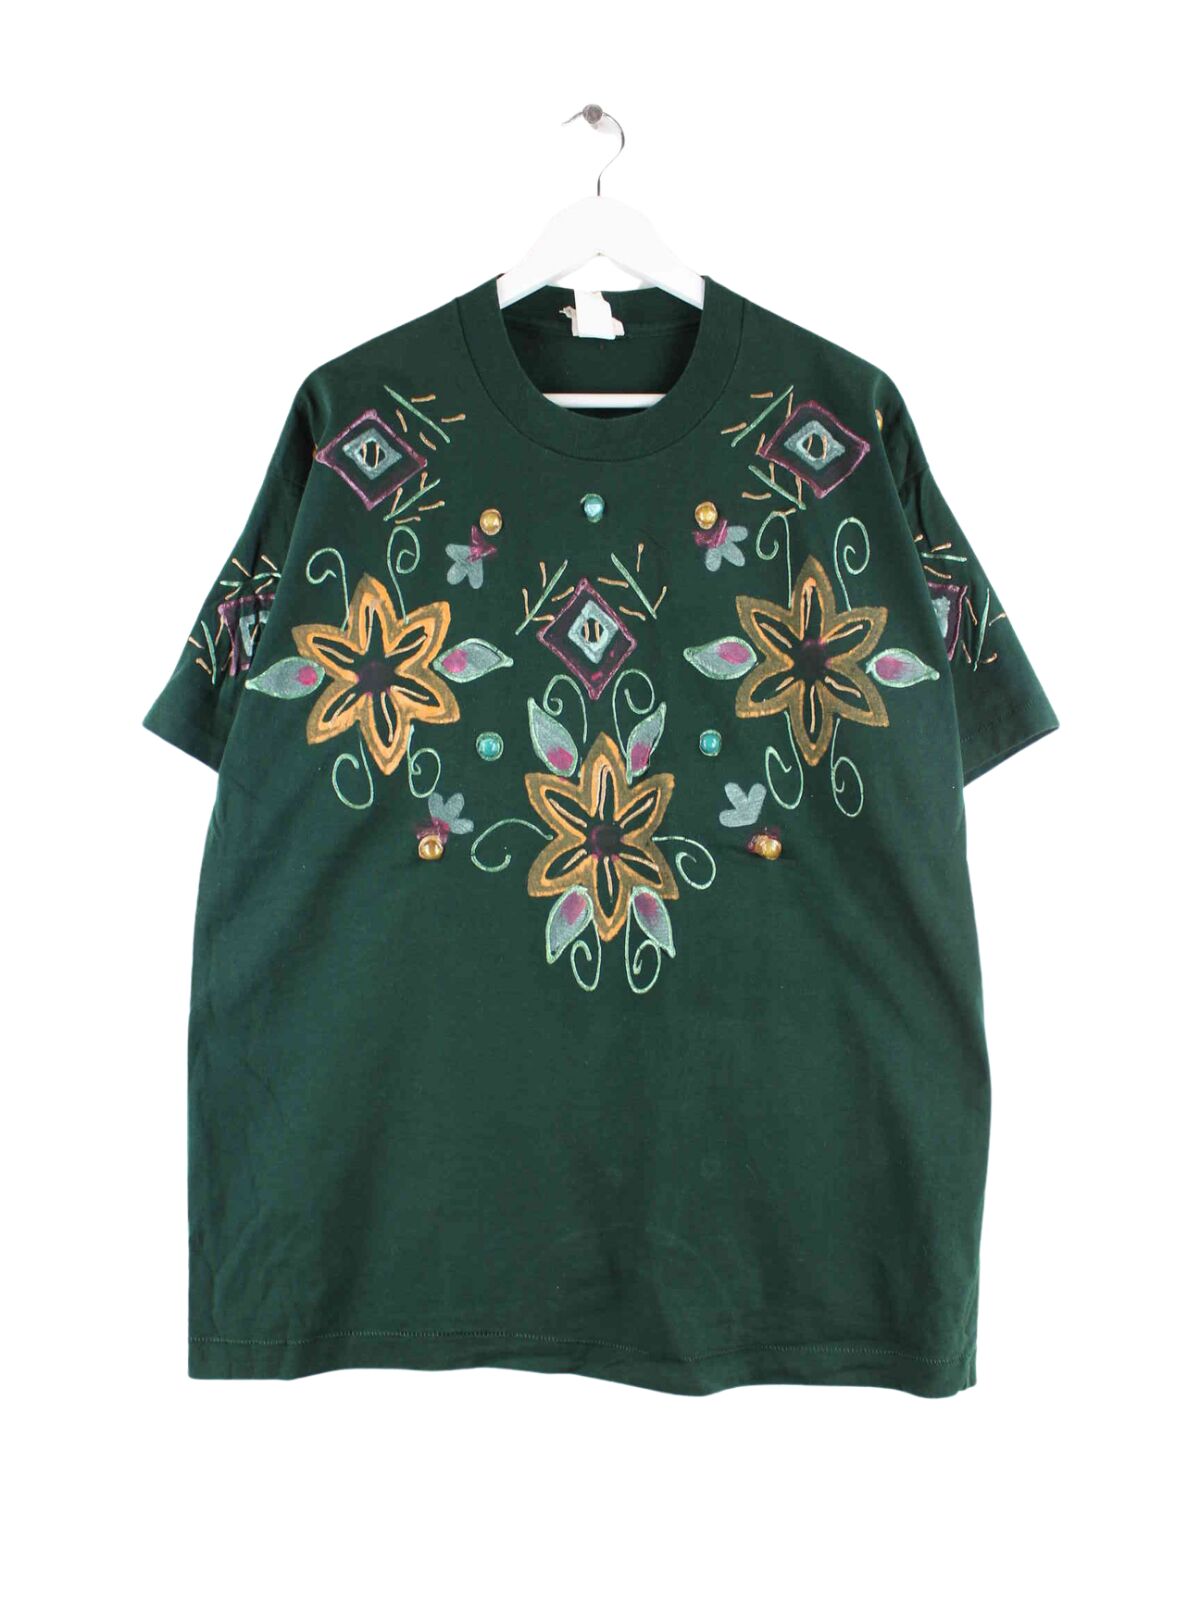 Vintage 90s Painted Single Stitched T-Shirt Grün L (front image)